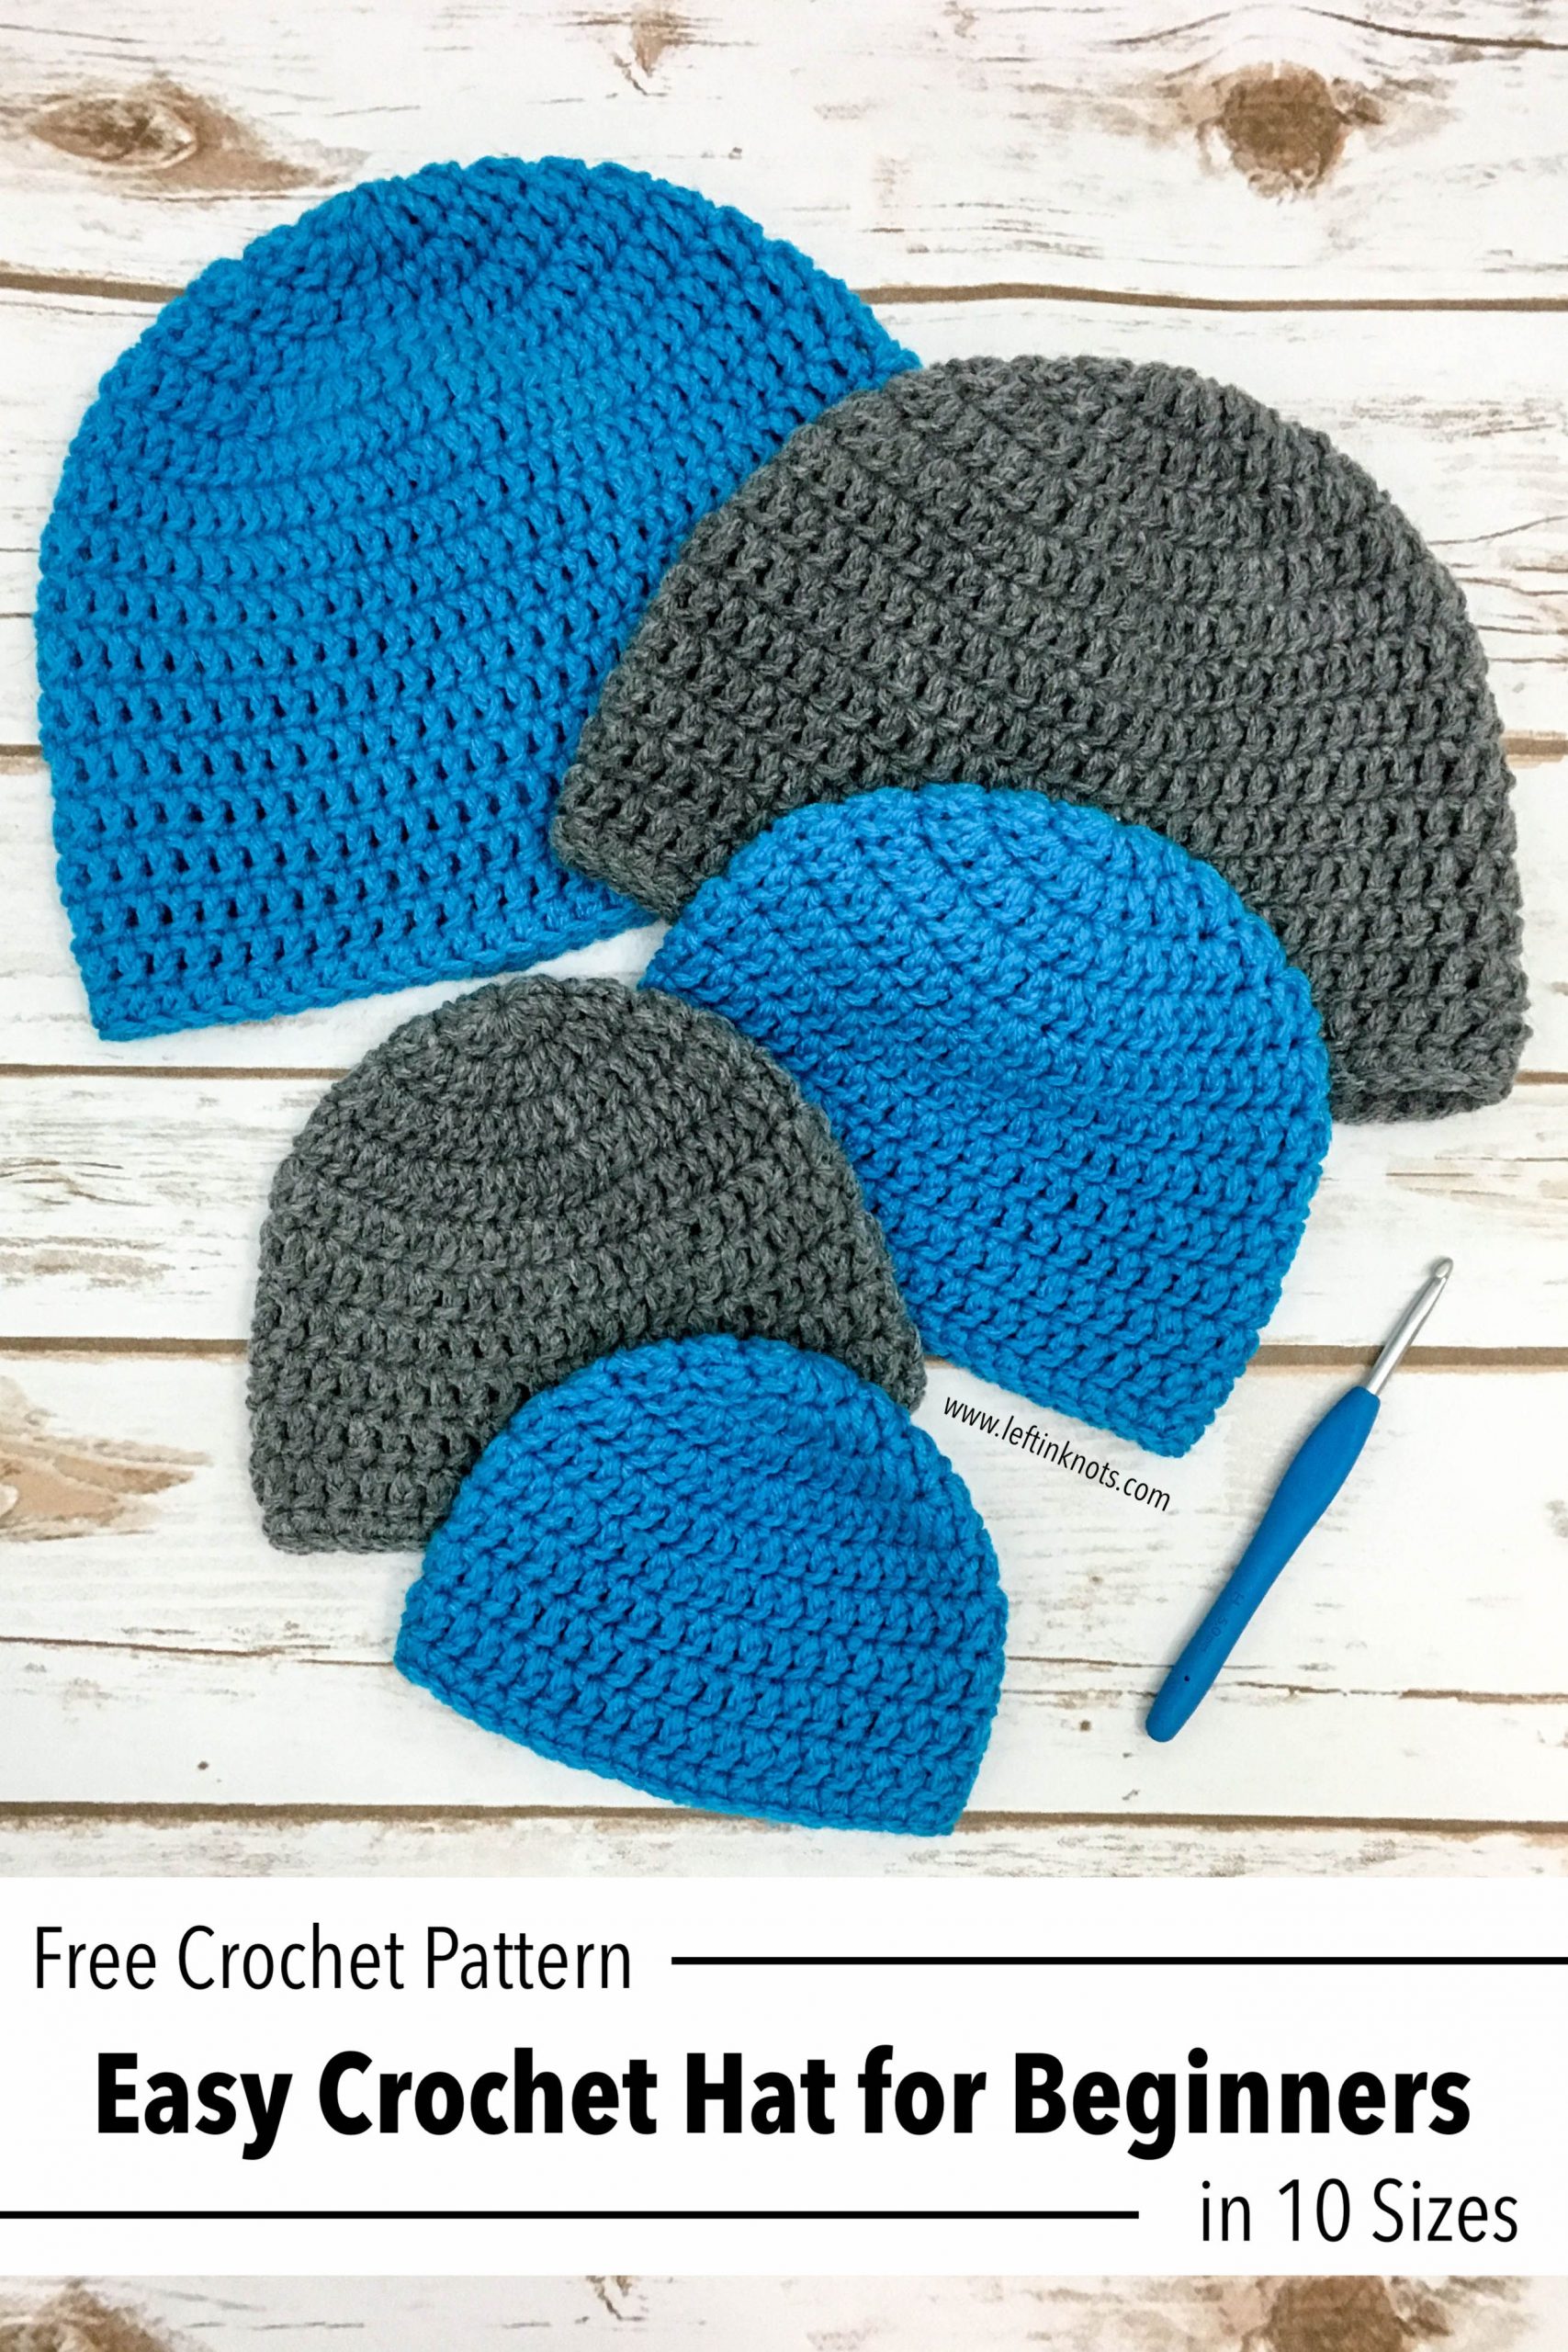 Crochet Hat in 10 Sizes - Free Pattern